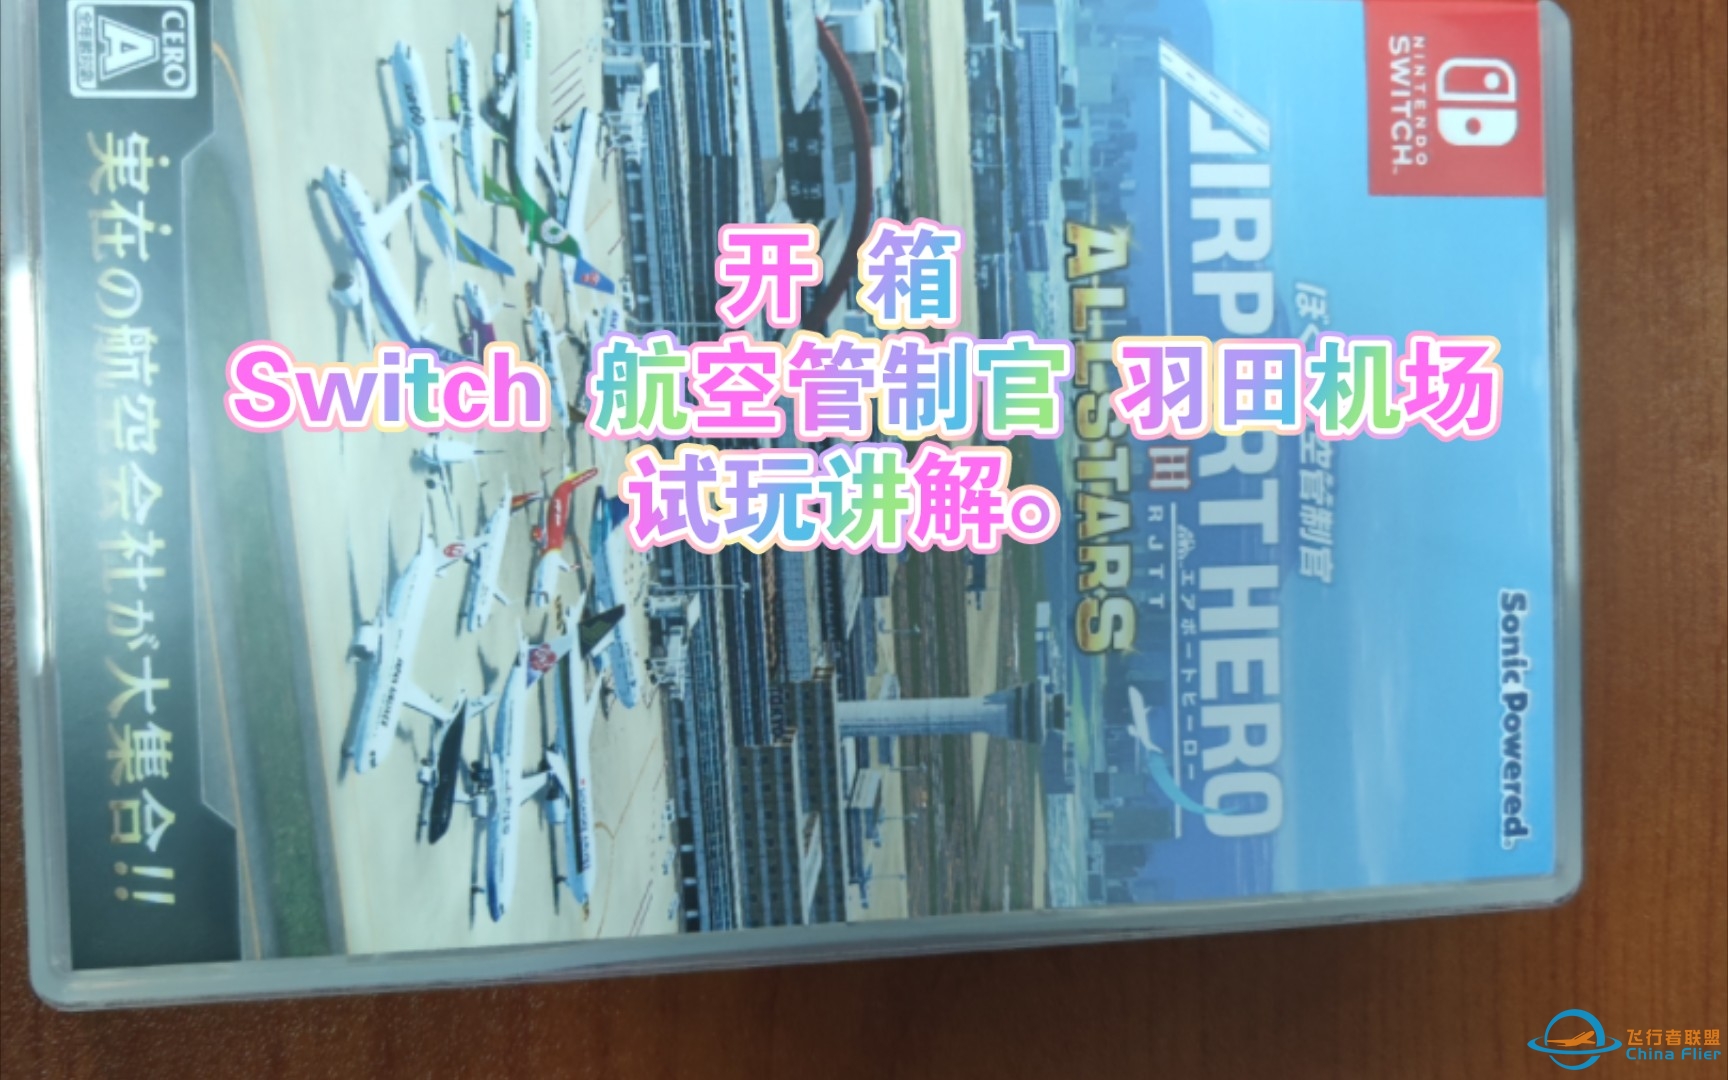 开箱 Switch 航空管制官 羽田机场及试玩讲解。-367 